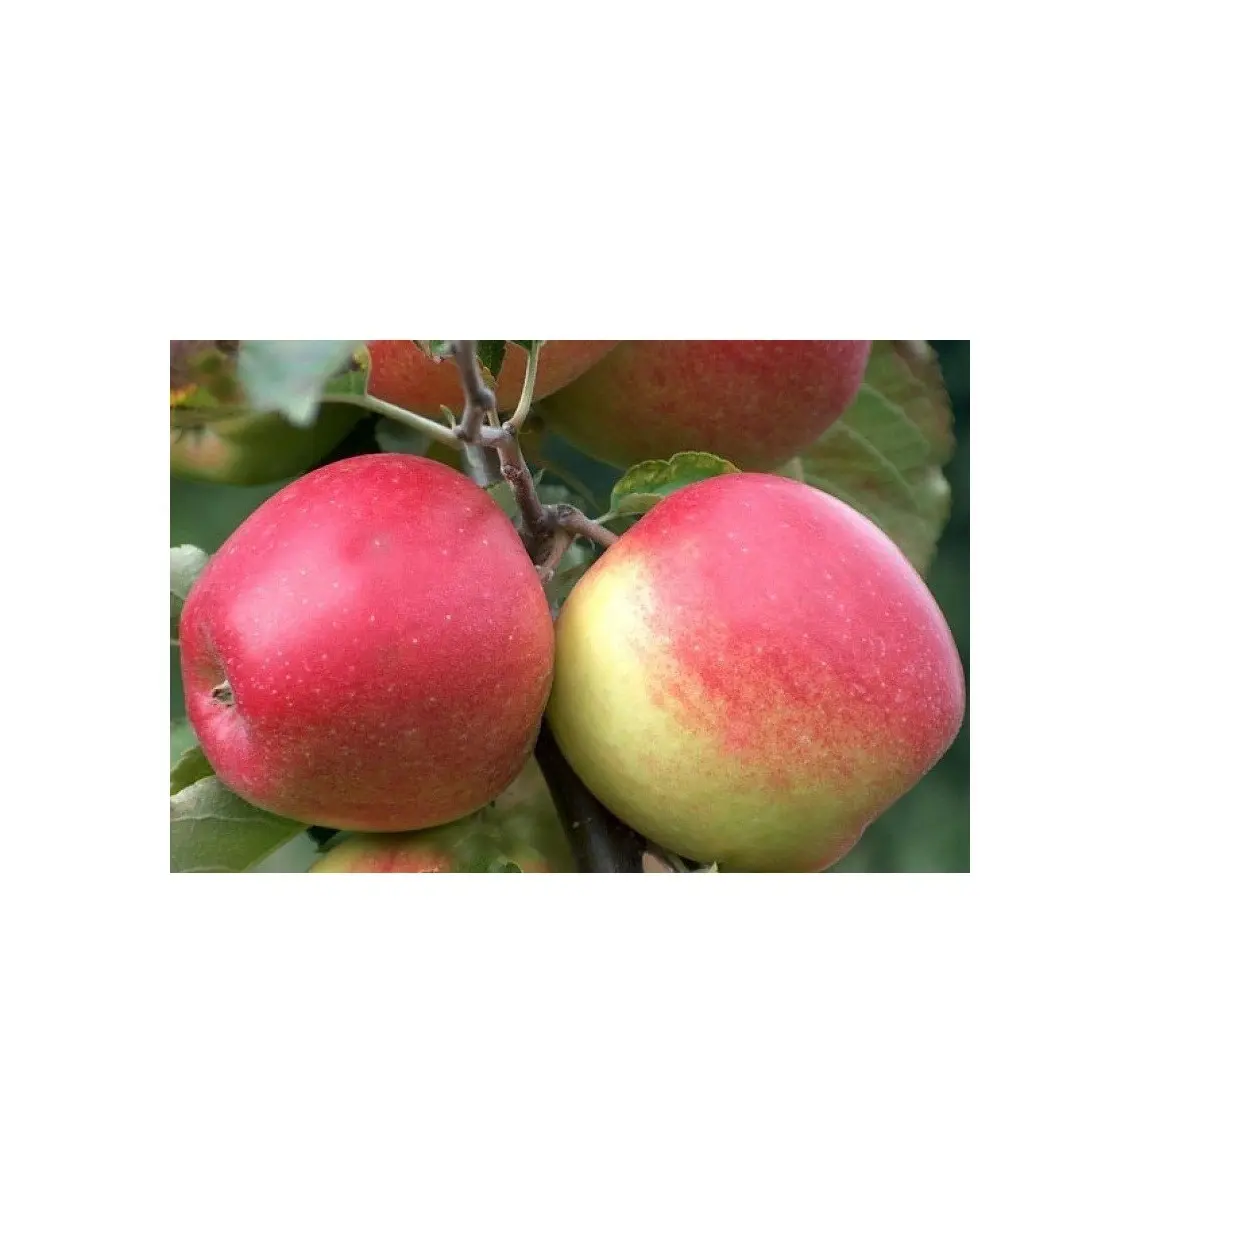 Fornecedor barato da Alemanha frutas frescas Jonagold maçã frutas a preço de atacado com transporte rápido